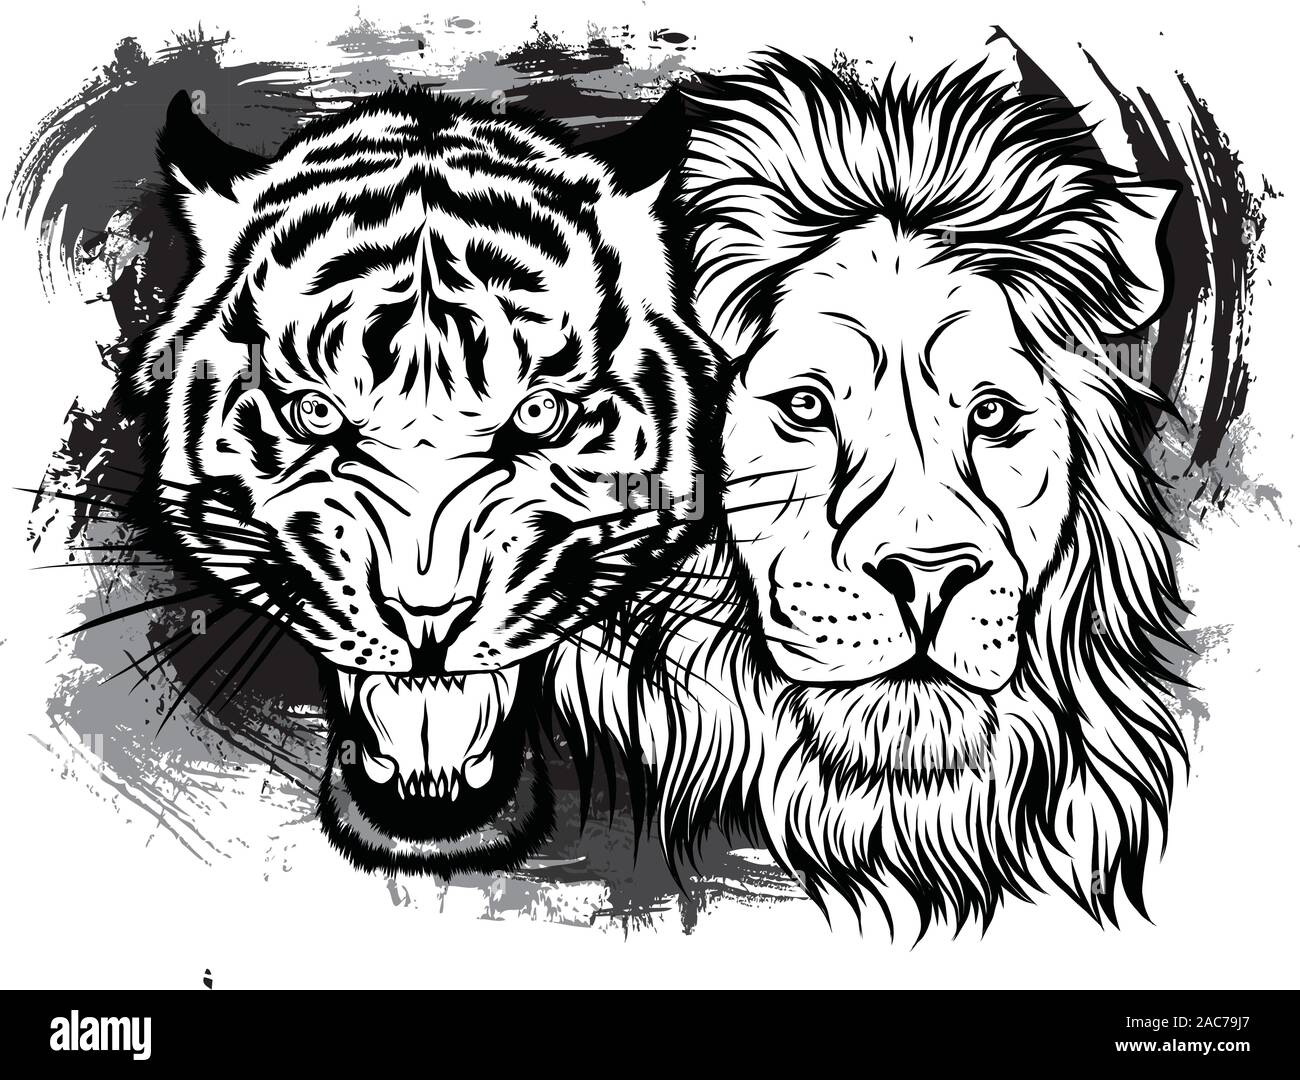 Löwen und Tiger Knurren einander gegenüber, öffnen Sie einen verbitterten Mund, Eckzähne, Hand gezeichnet Doodle, Skizze im Pop Art Stil, Vektor, Abbildung Stock Vektor